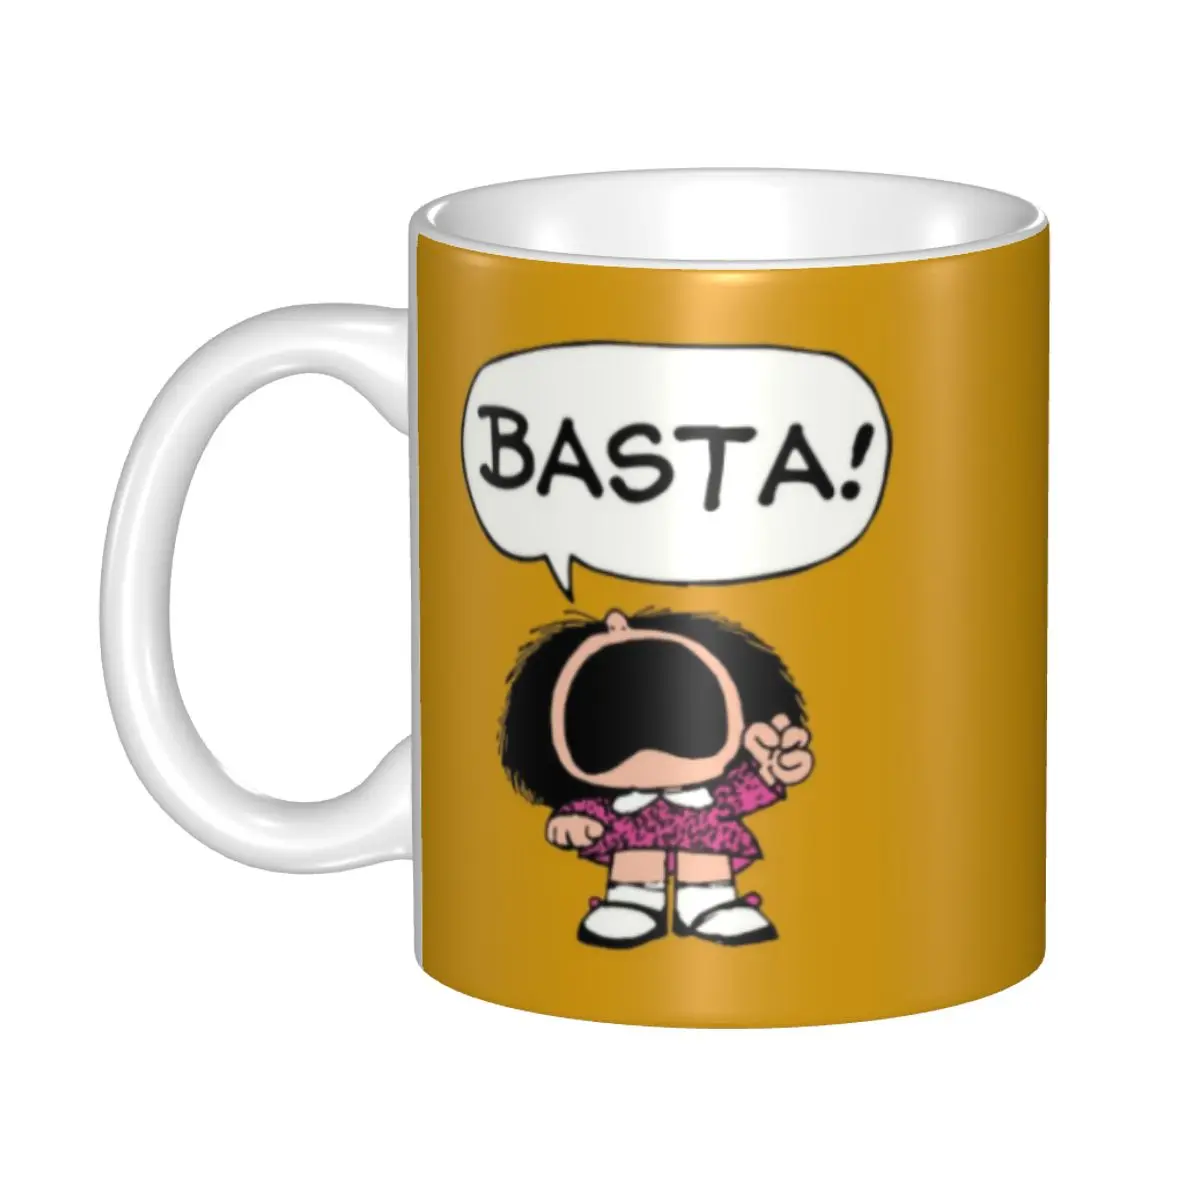 

Mafalda Basta кружка Персонализированная мультфильм манга Quino комиксы кофейная керамическая кружка креативный подарок